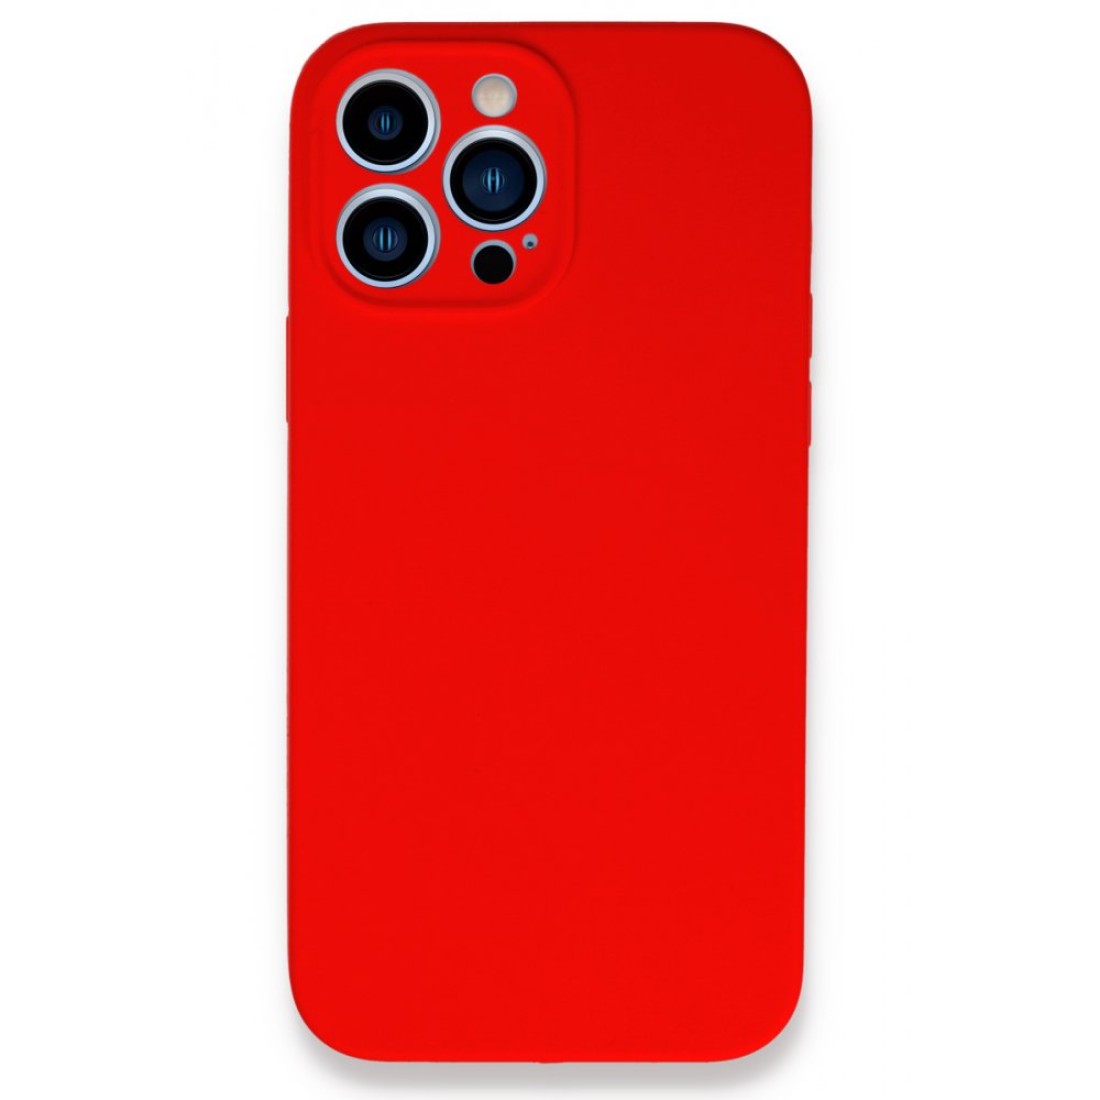 Apple iPhone 13 Pro Max Kılıf Lansman Legant Silikon - Kırmızı